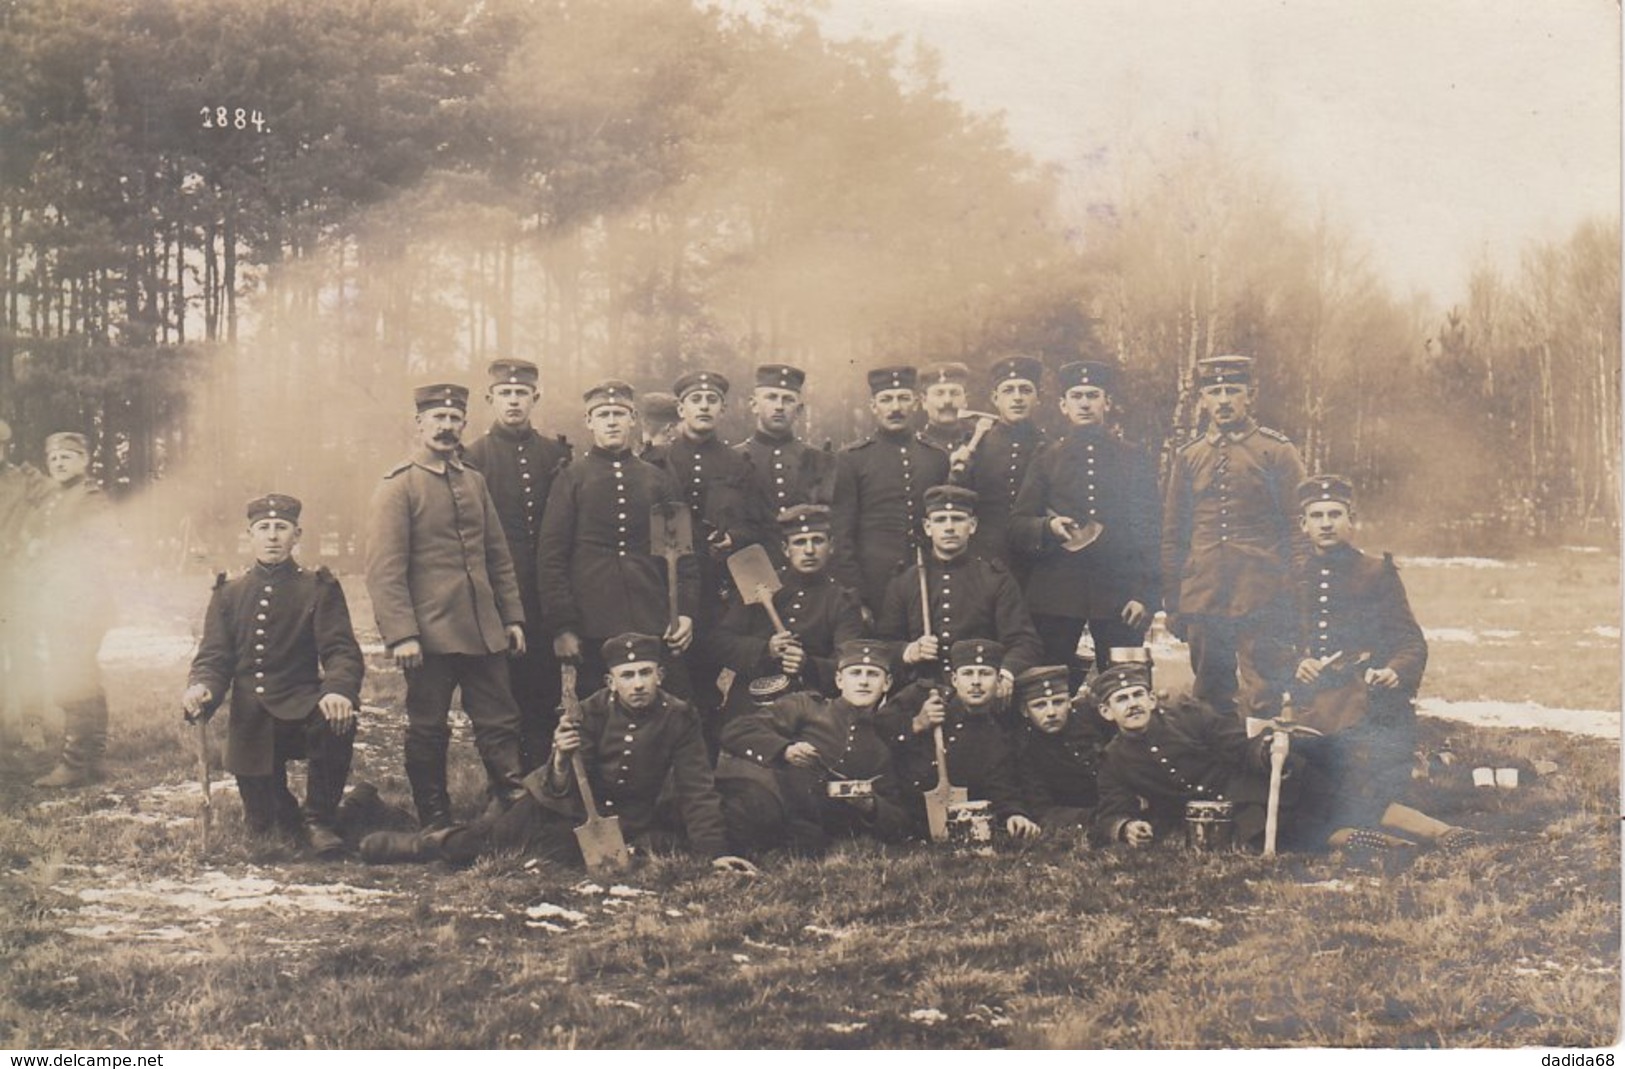 CARTE PHOTO ALLEMANDE - GUERRE 14-18 - KÖNIGSBRÜCK (ALLEMAGNE) - SOLDATS ALLEMANDS EN MANOEUVRE - Oorlog 1914-18